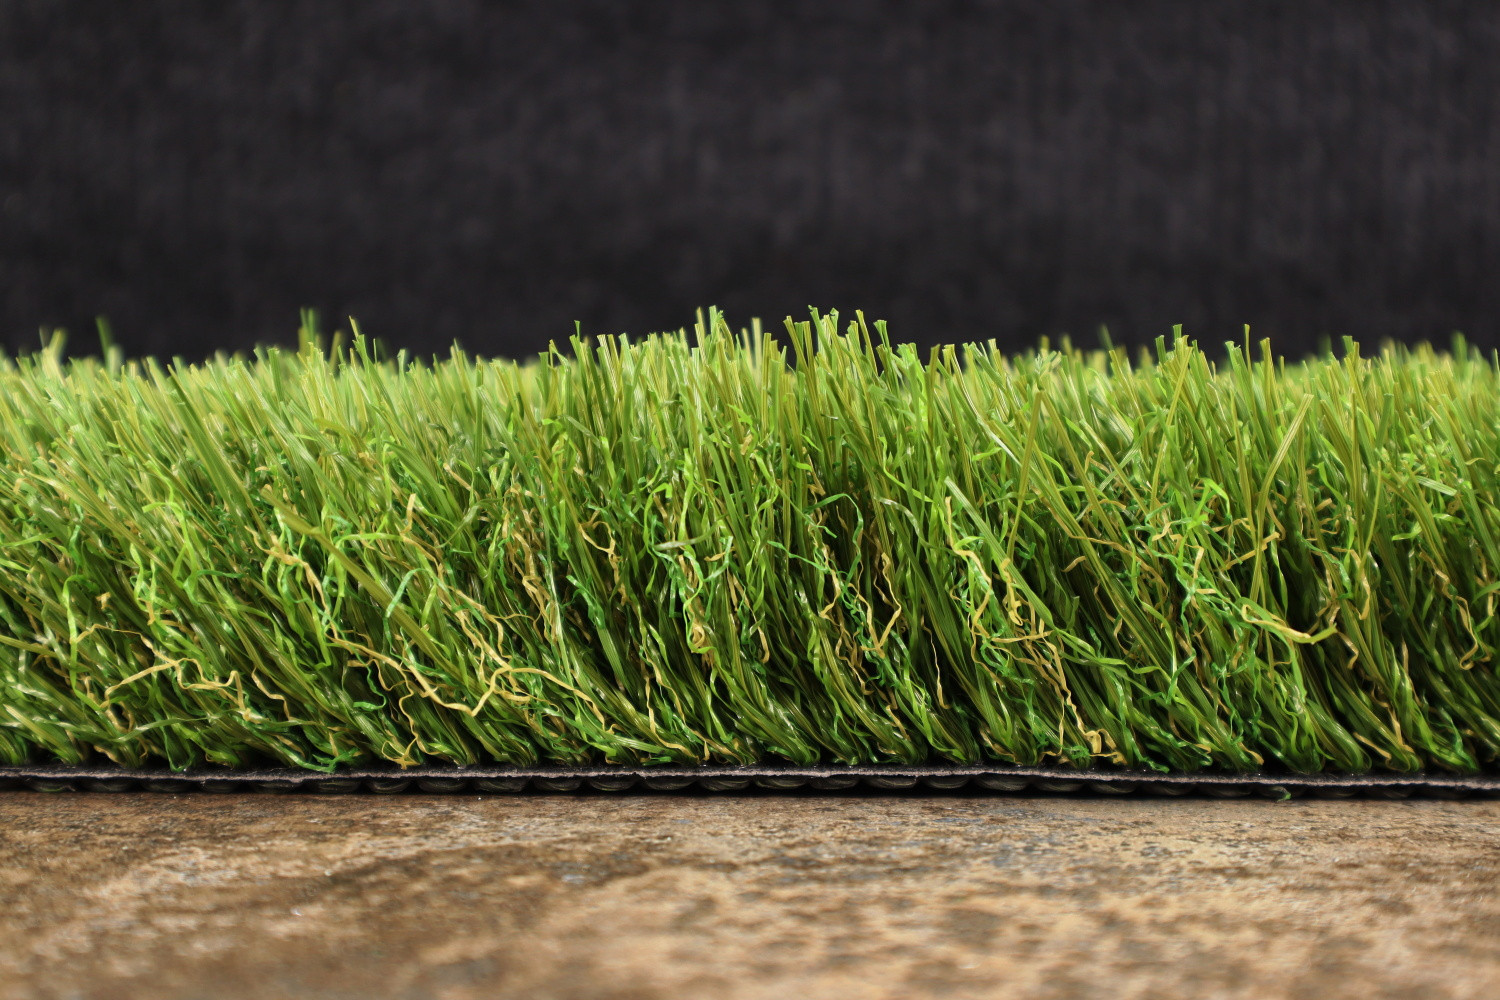 AKCE: 100x200 cm Umělá tráva Princess metrážní - Rozměr na míru cm Artificial grass specialists